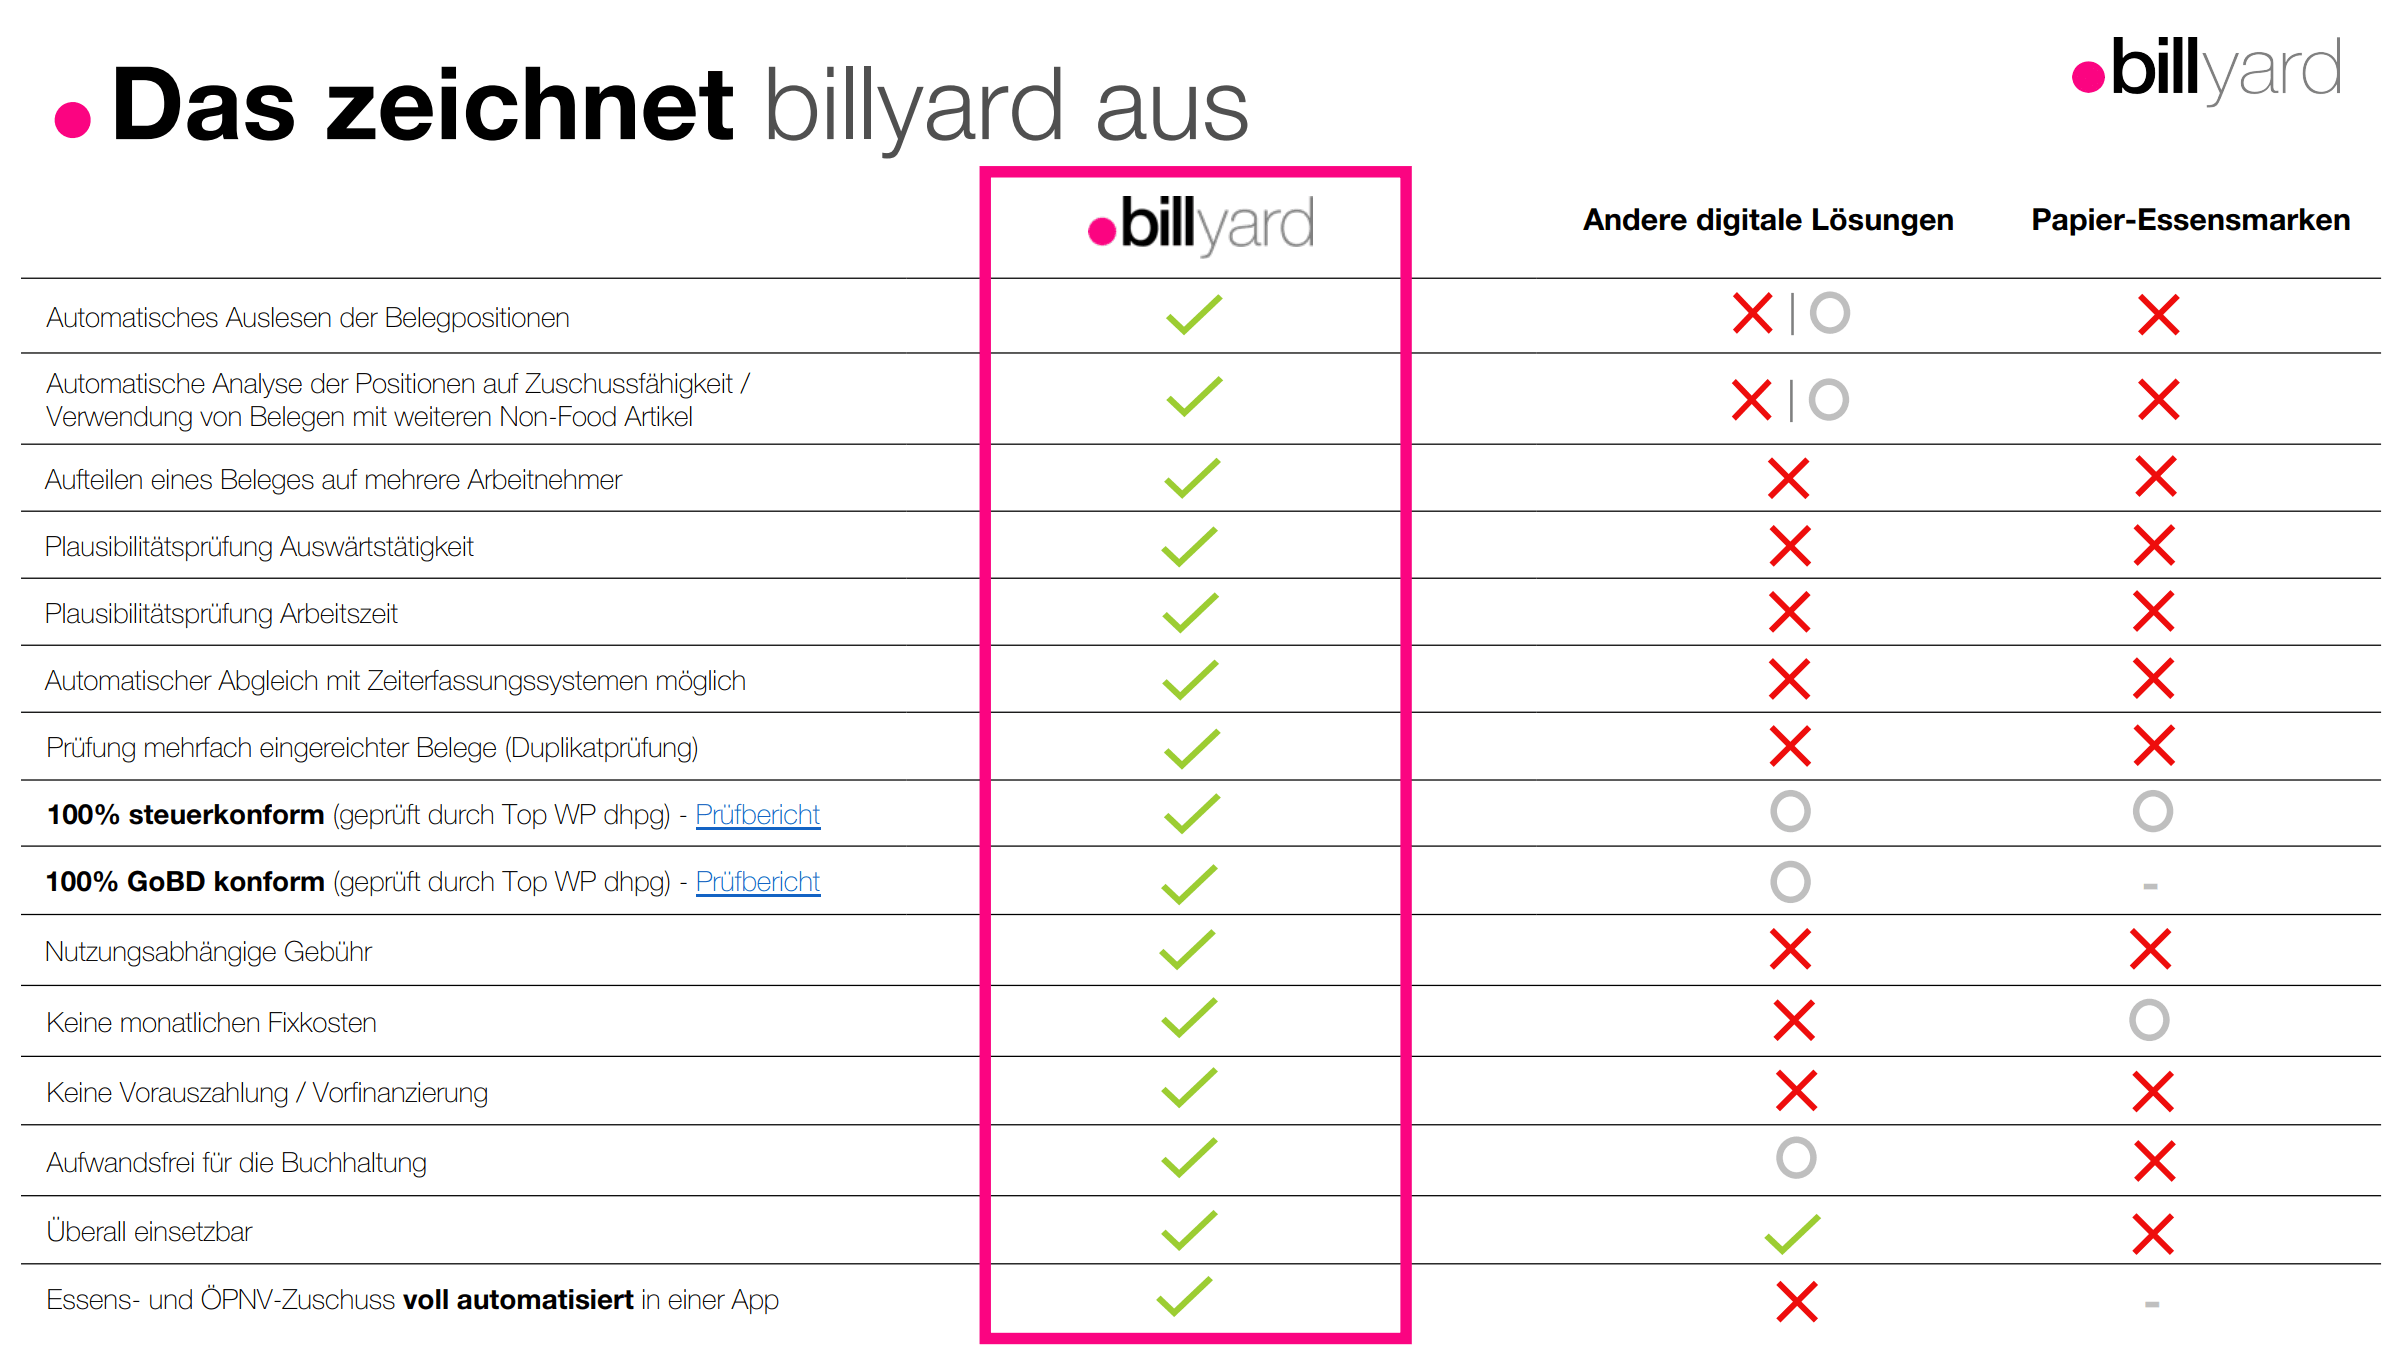 billyard im Vergleich zu anderen Anbietern